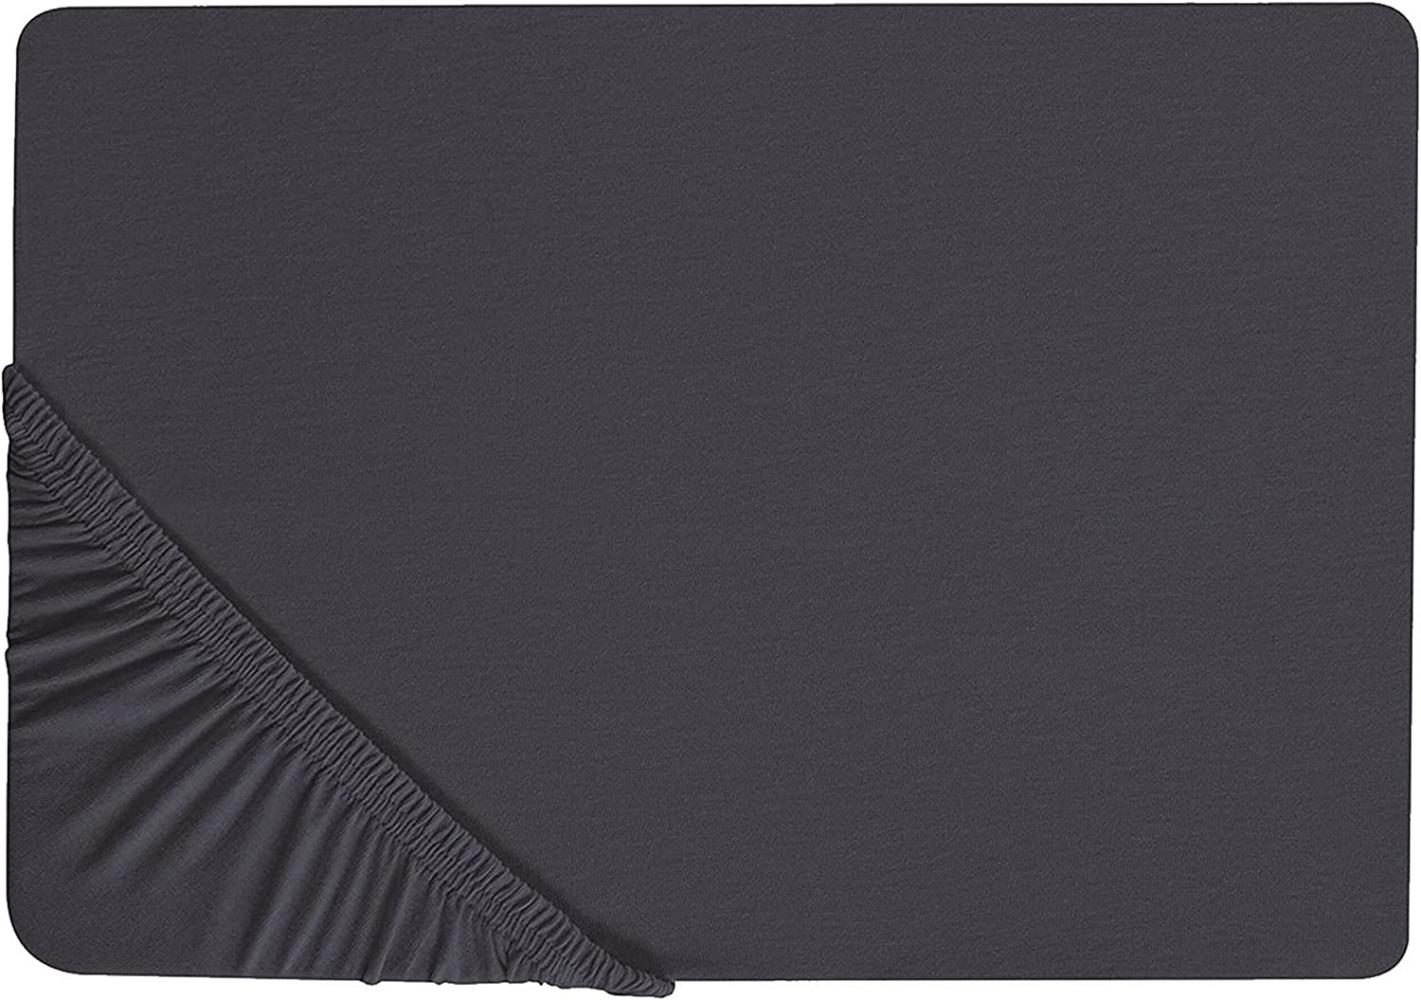 Spannbettlaken schwarz Baumwolle 140 x 200 cm HOFUF Bild 1